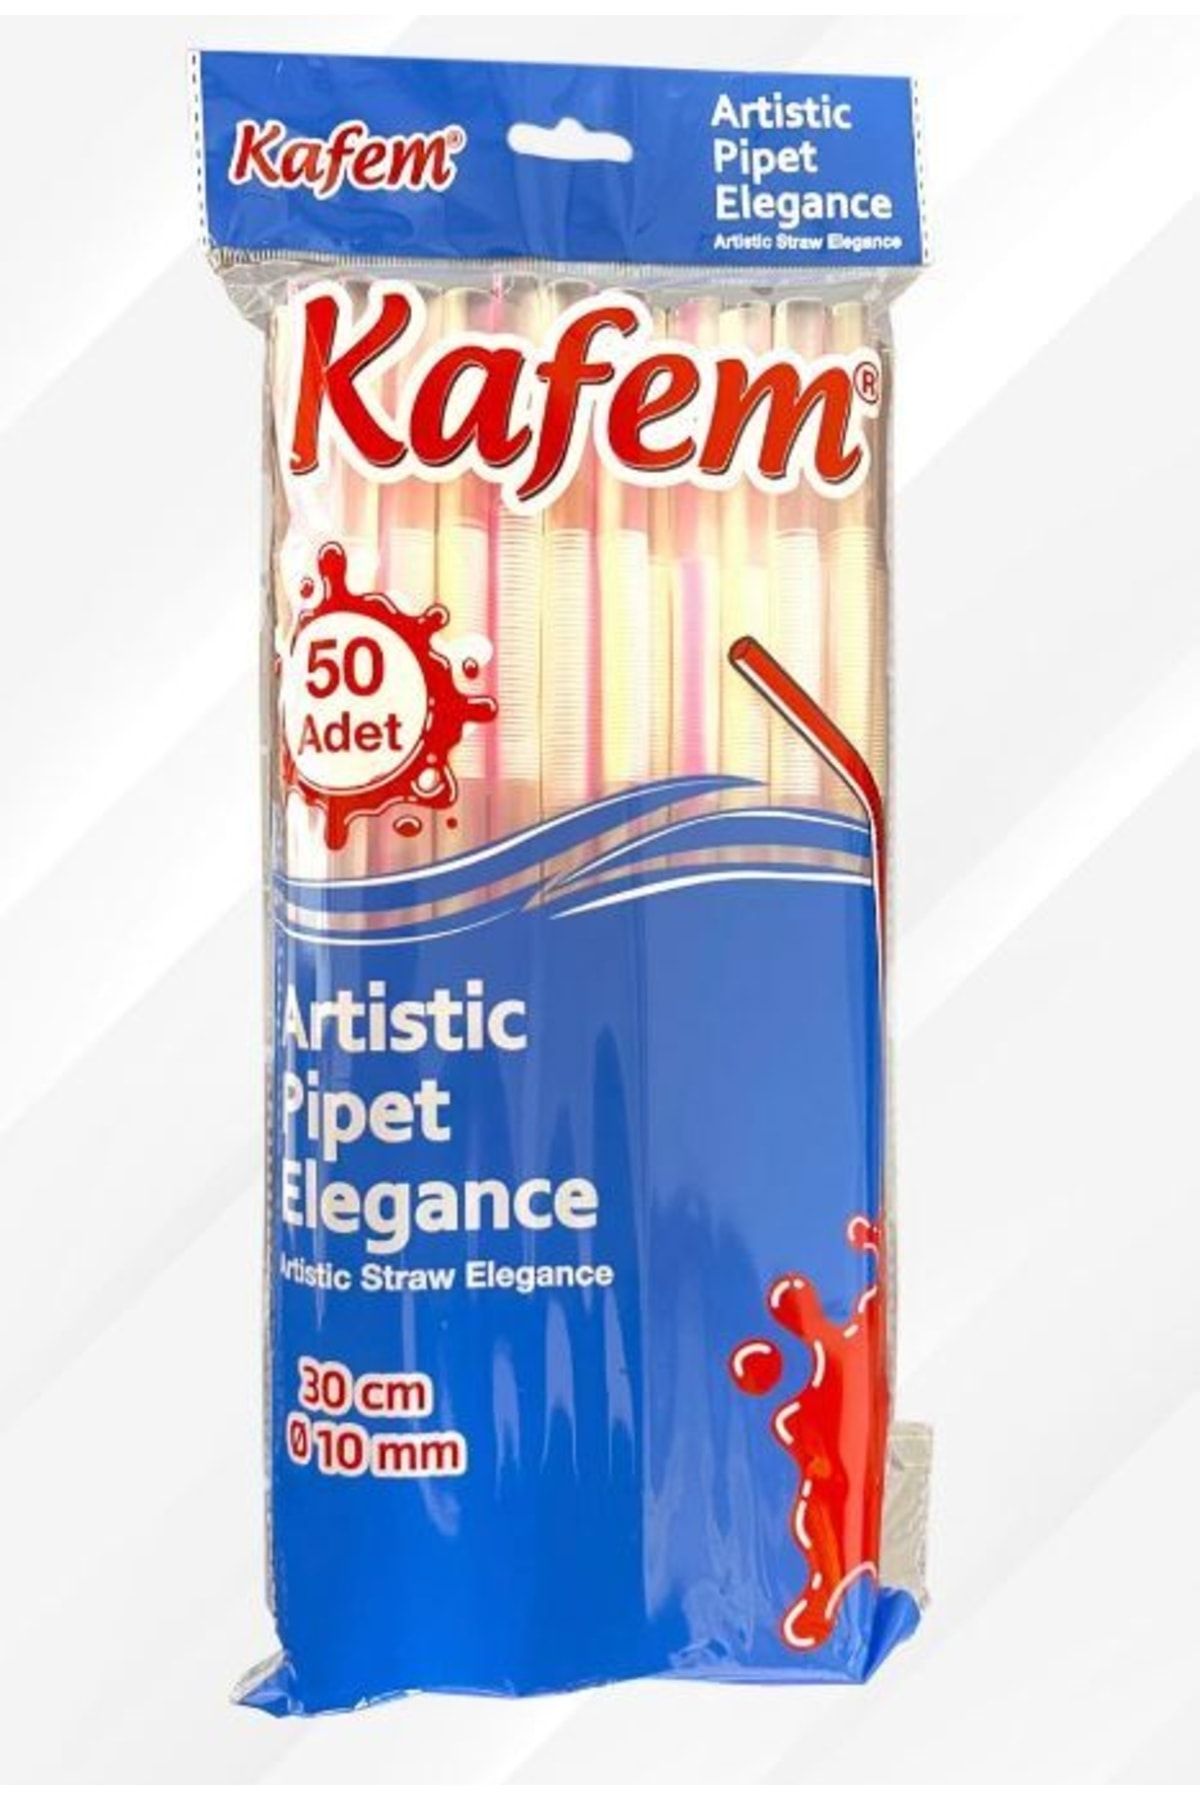 KAFEM Artistik Pipet Elegance 30 Cm Q10 Mm 50 Li -